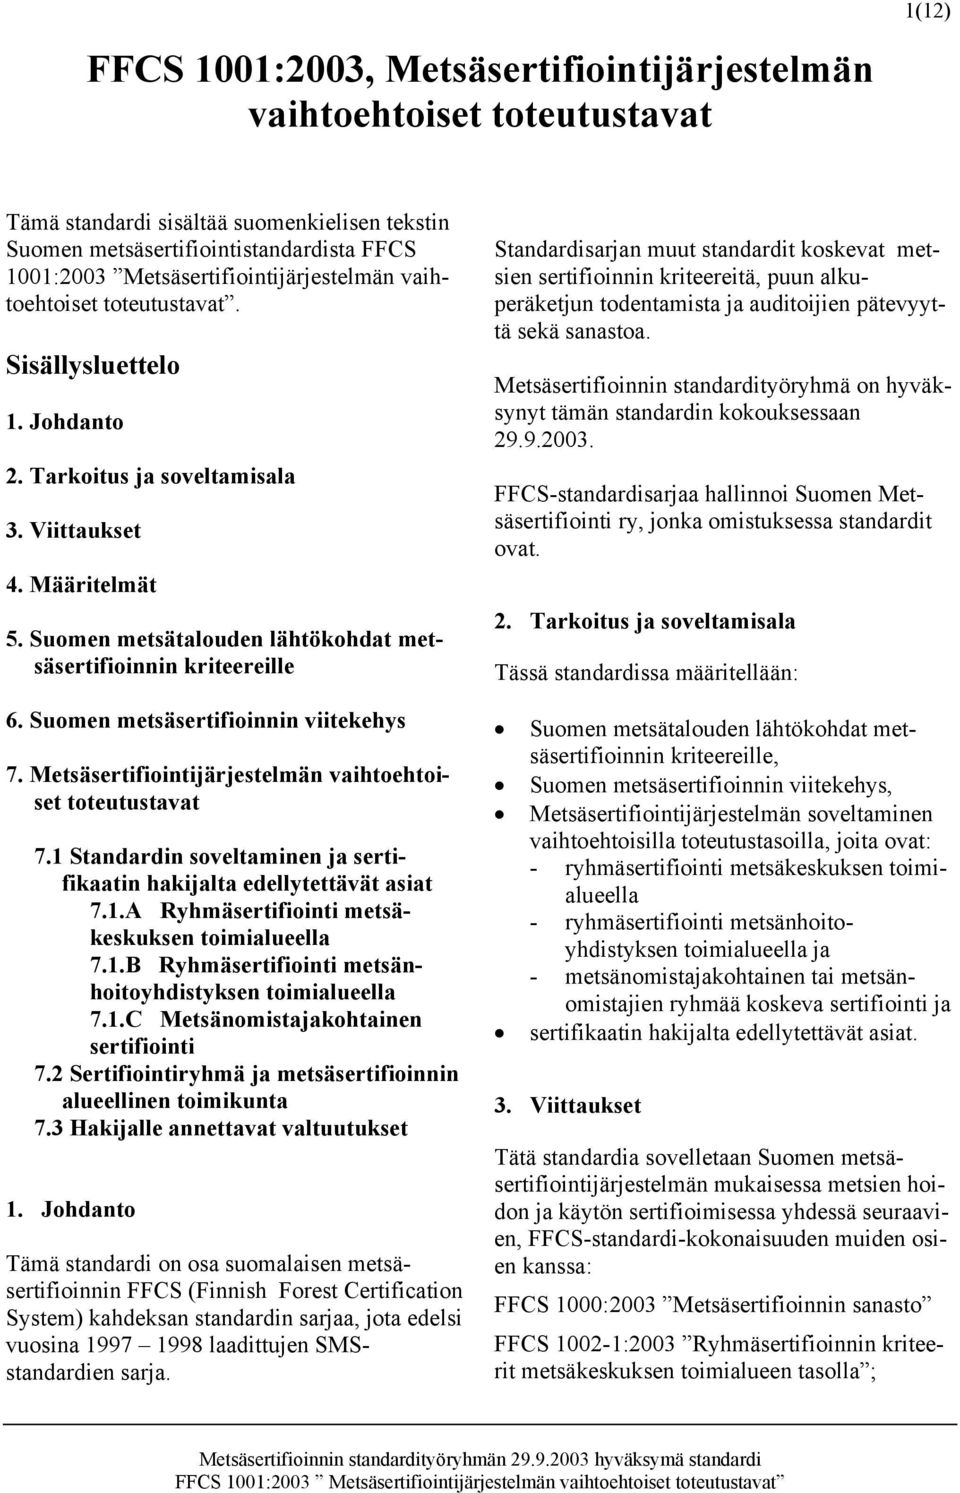 Suomen metsätalouden lähtökohdat metsäsertifioinnin kriteereille 6. Suomen metsäsertifioinnin viitekehys 7. Metsäsertifiointijärjestelmän vaihtoehtoiset toteutustavat 7.